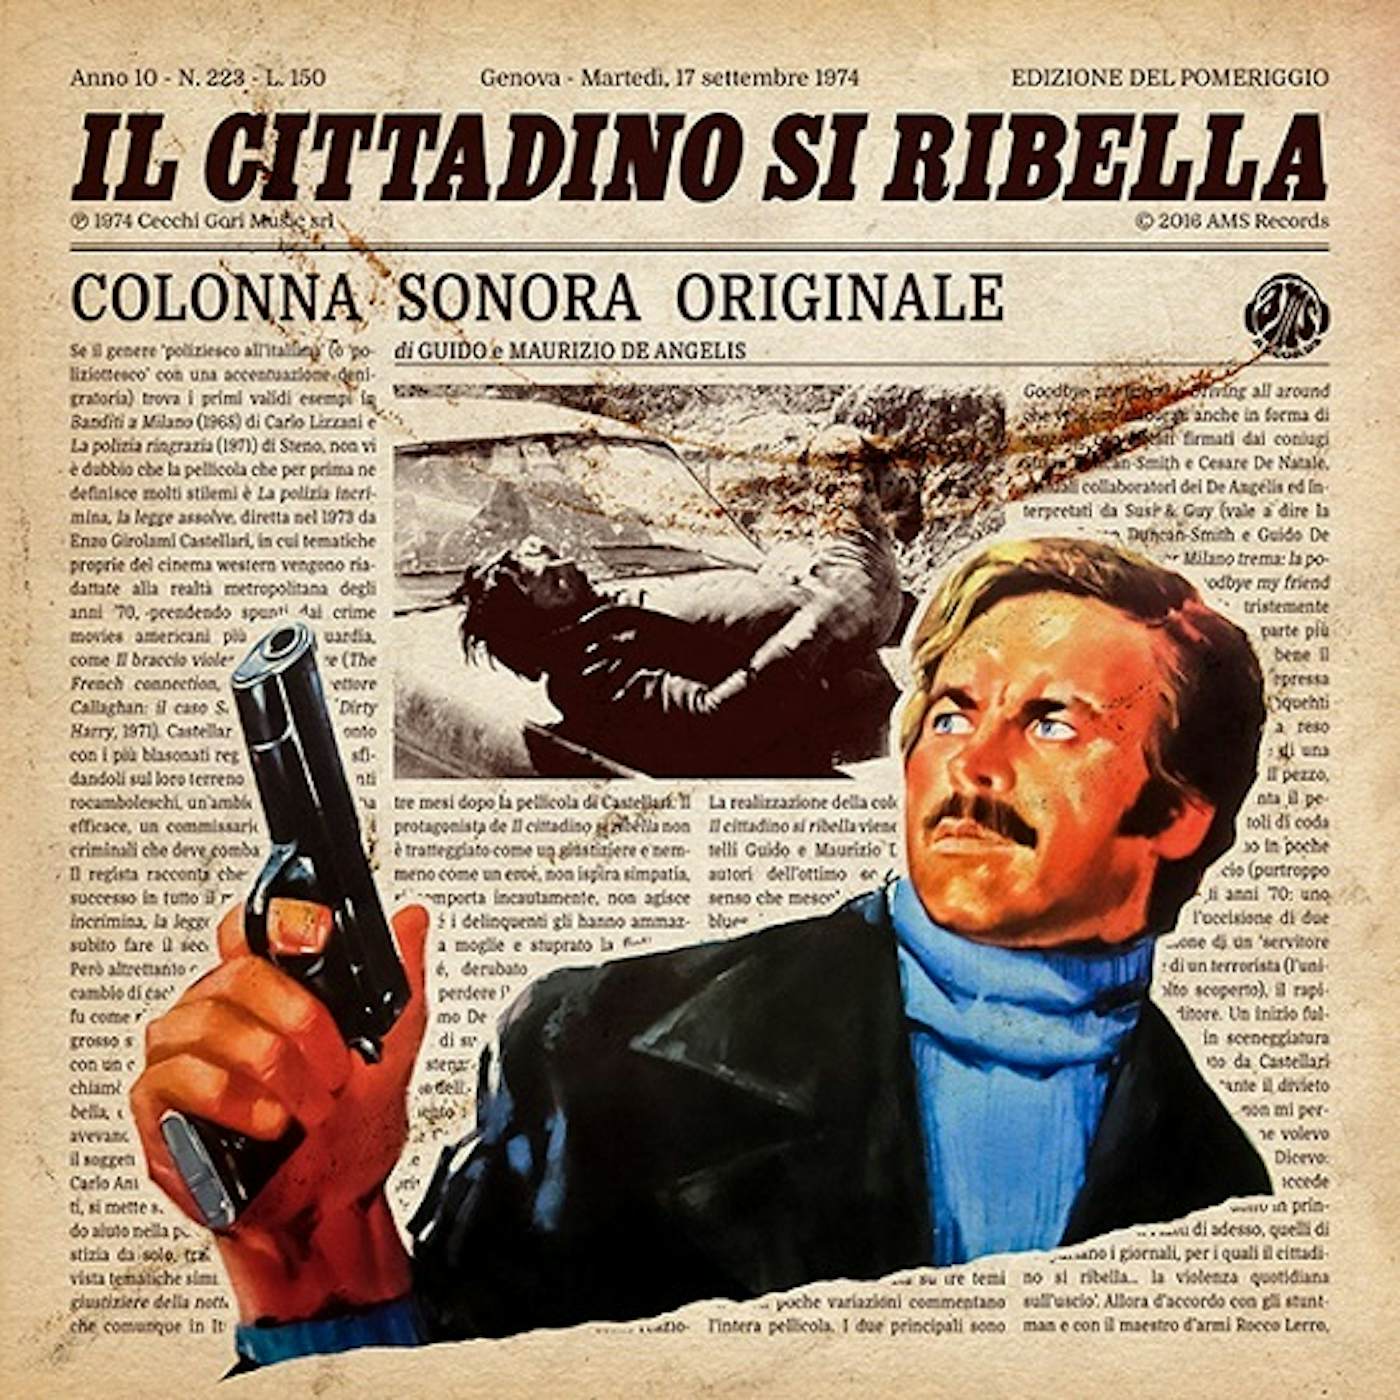 Guido & Maurizio De Angelis IL CITTADINO SI RIBELLA / Original Soundtrack Vinyl Record